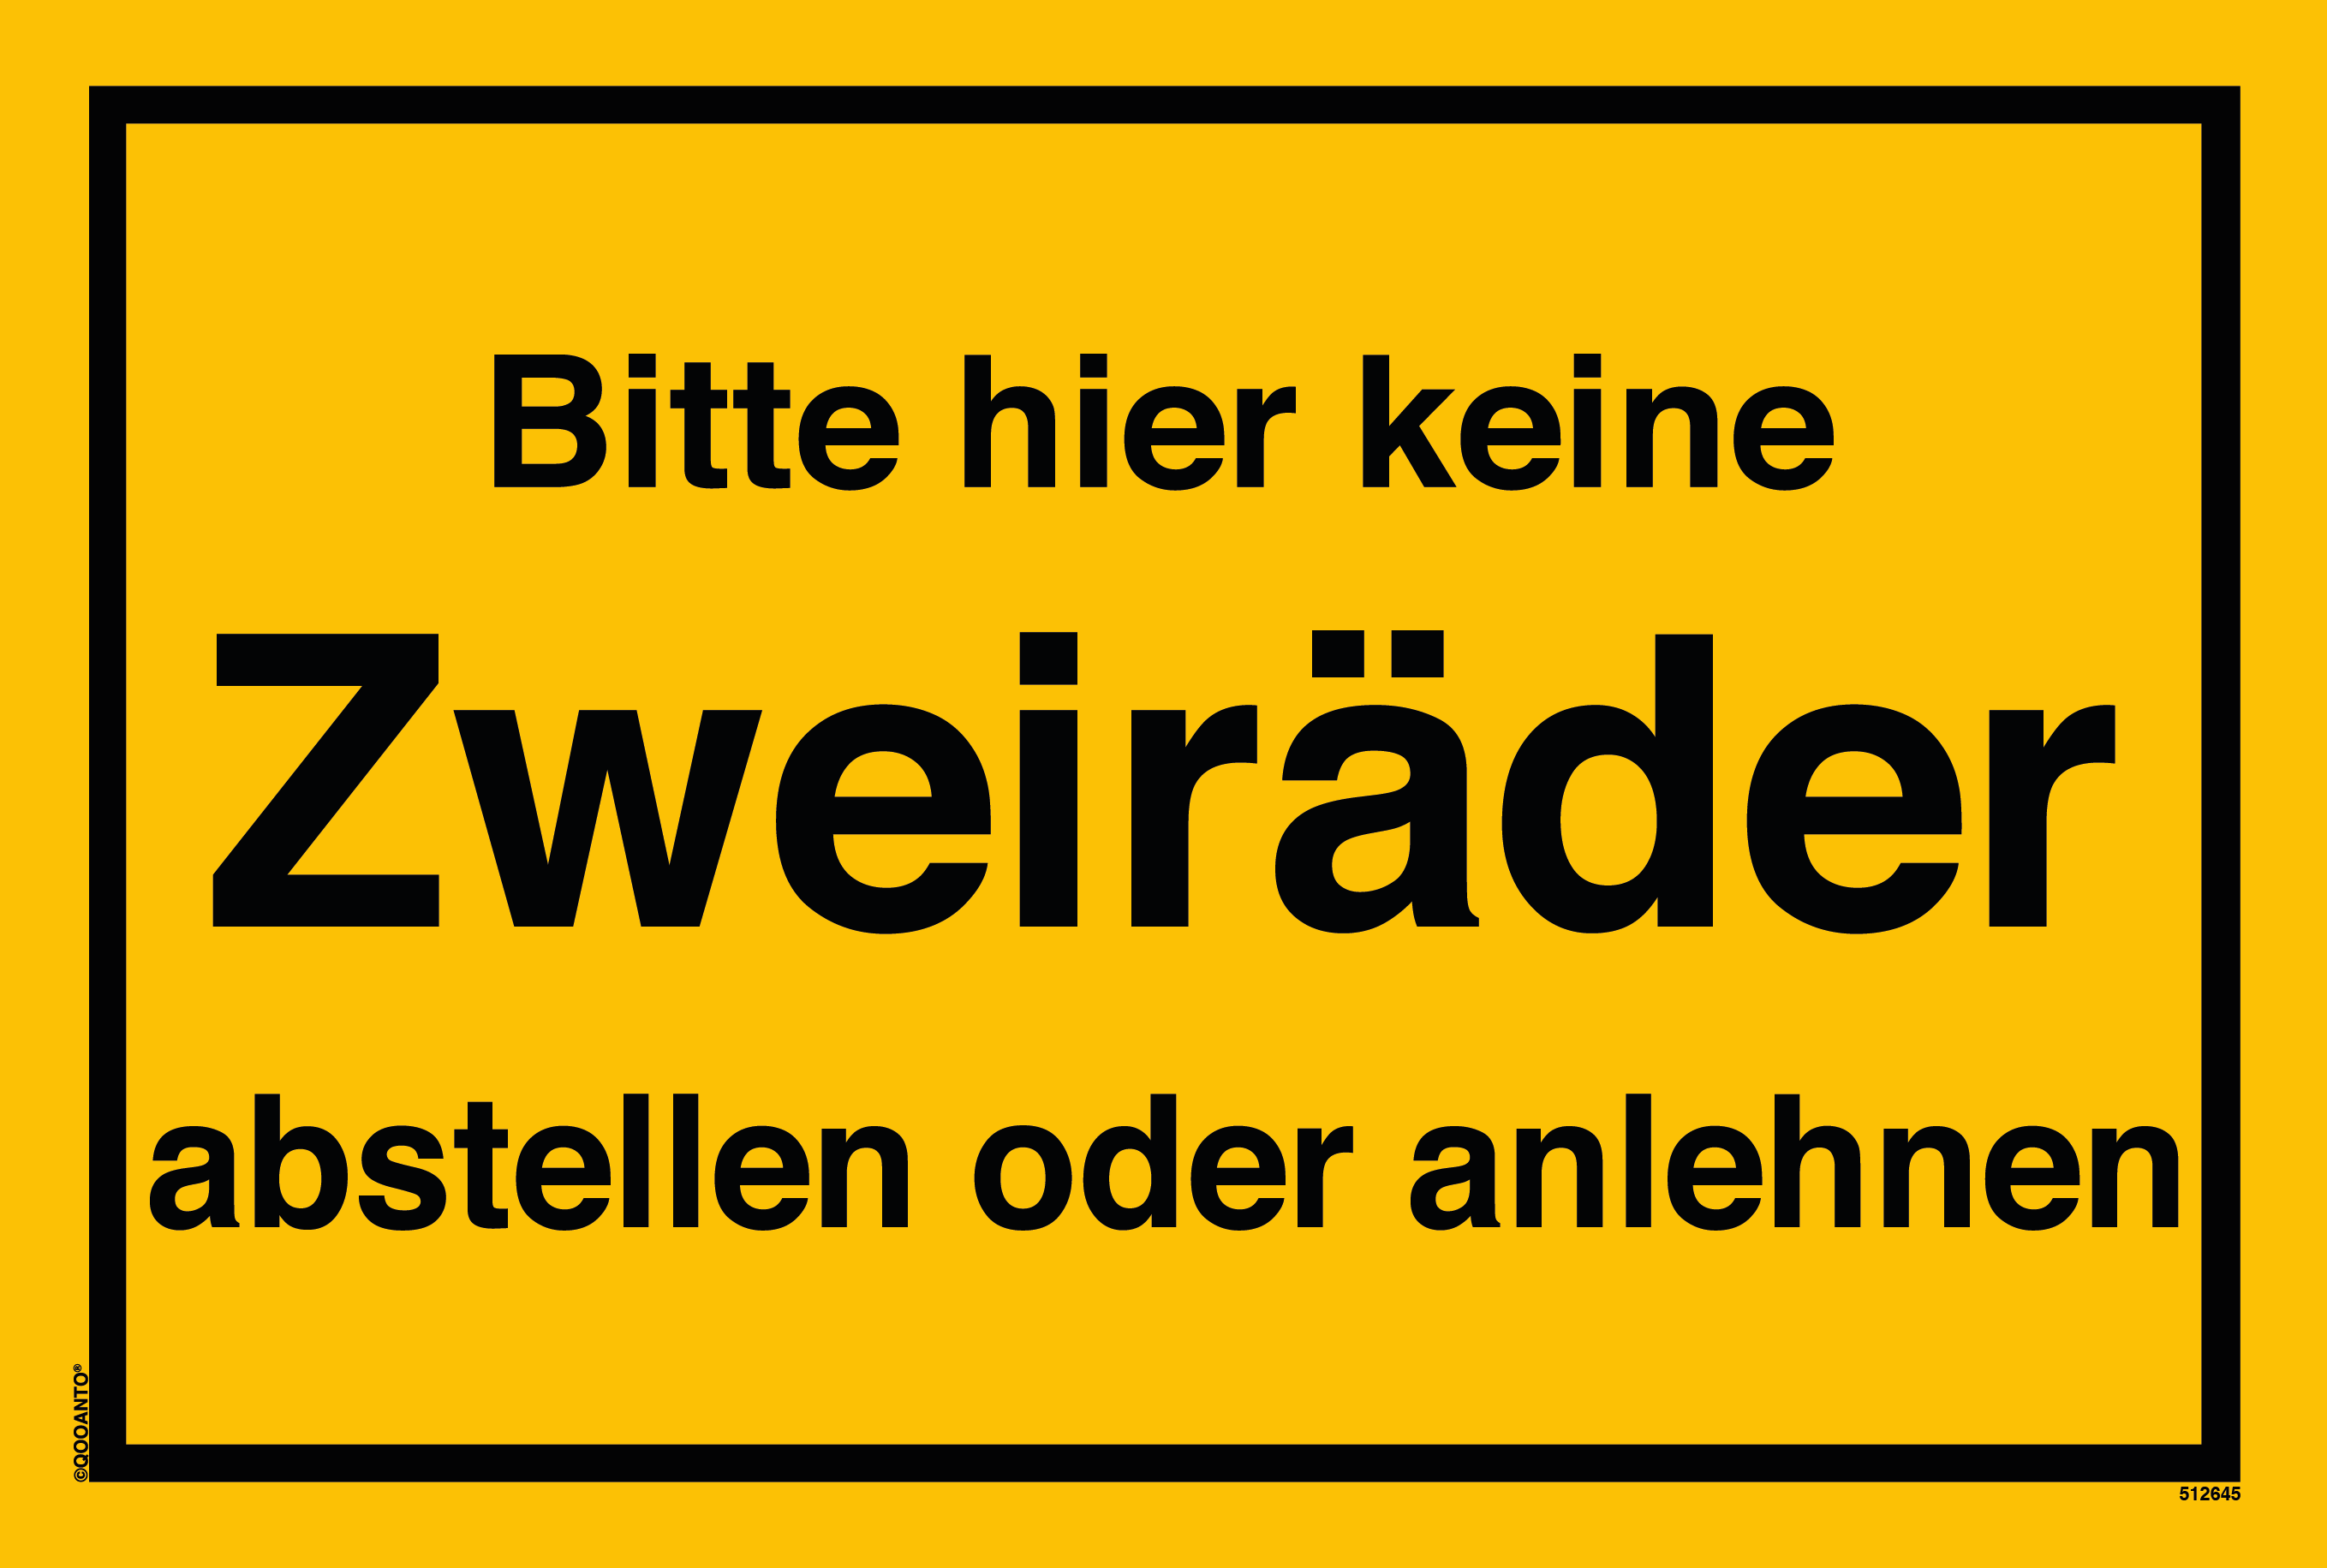 Bitte hier keine Zweiräder abstellen oder anlehnen, gelb, Schild